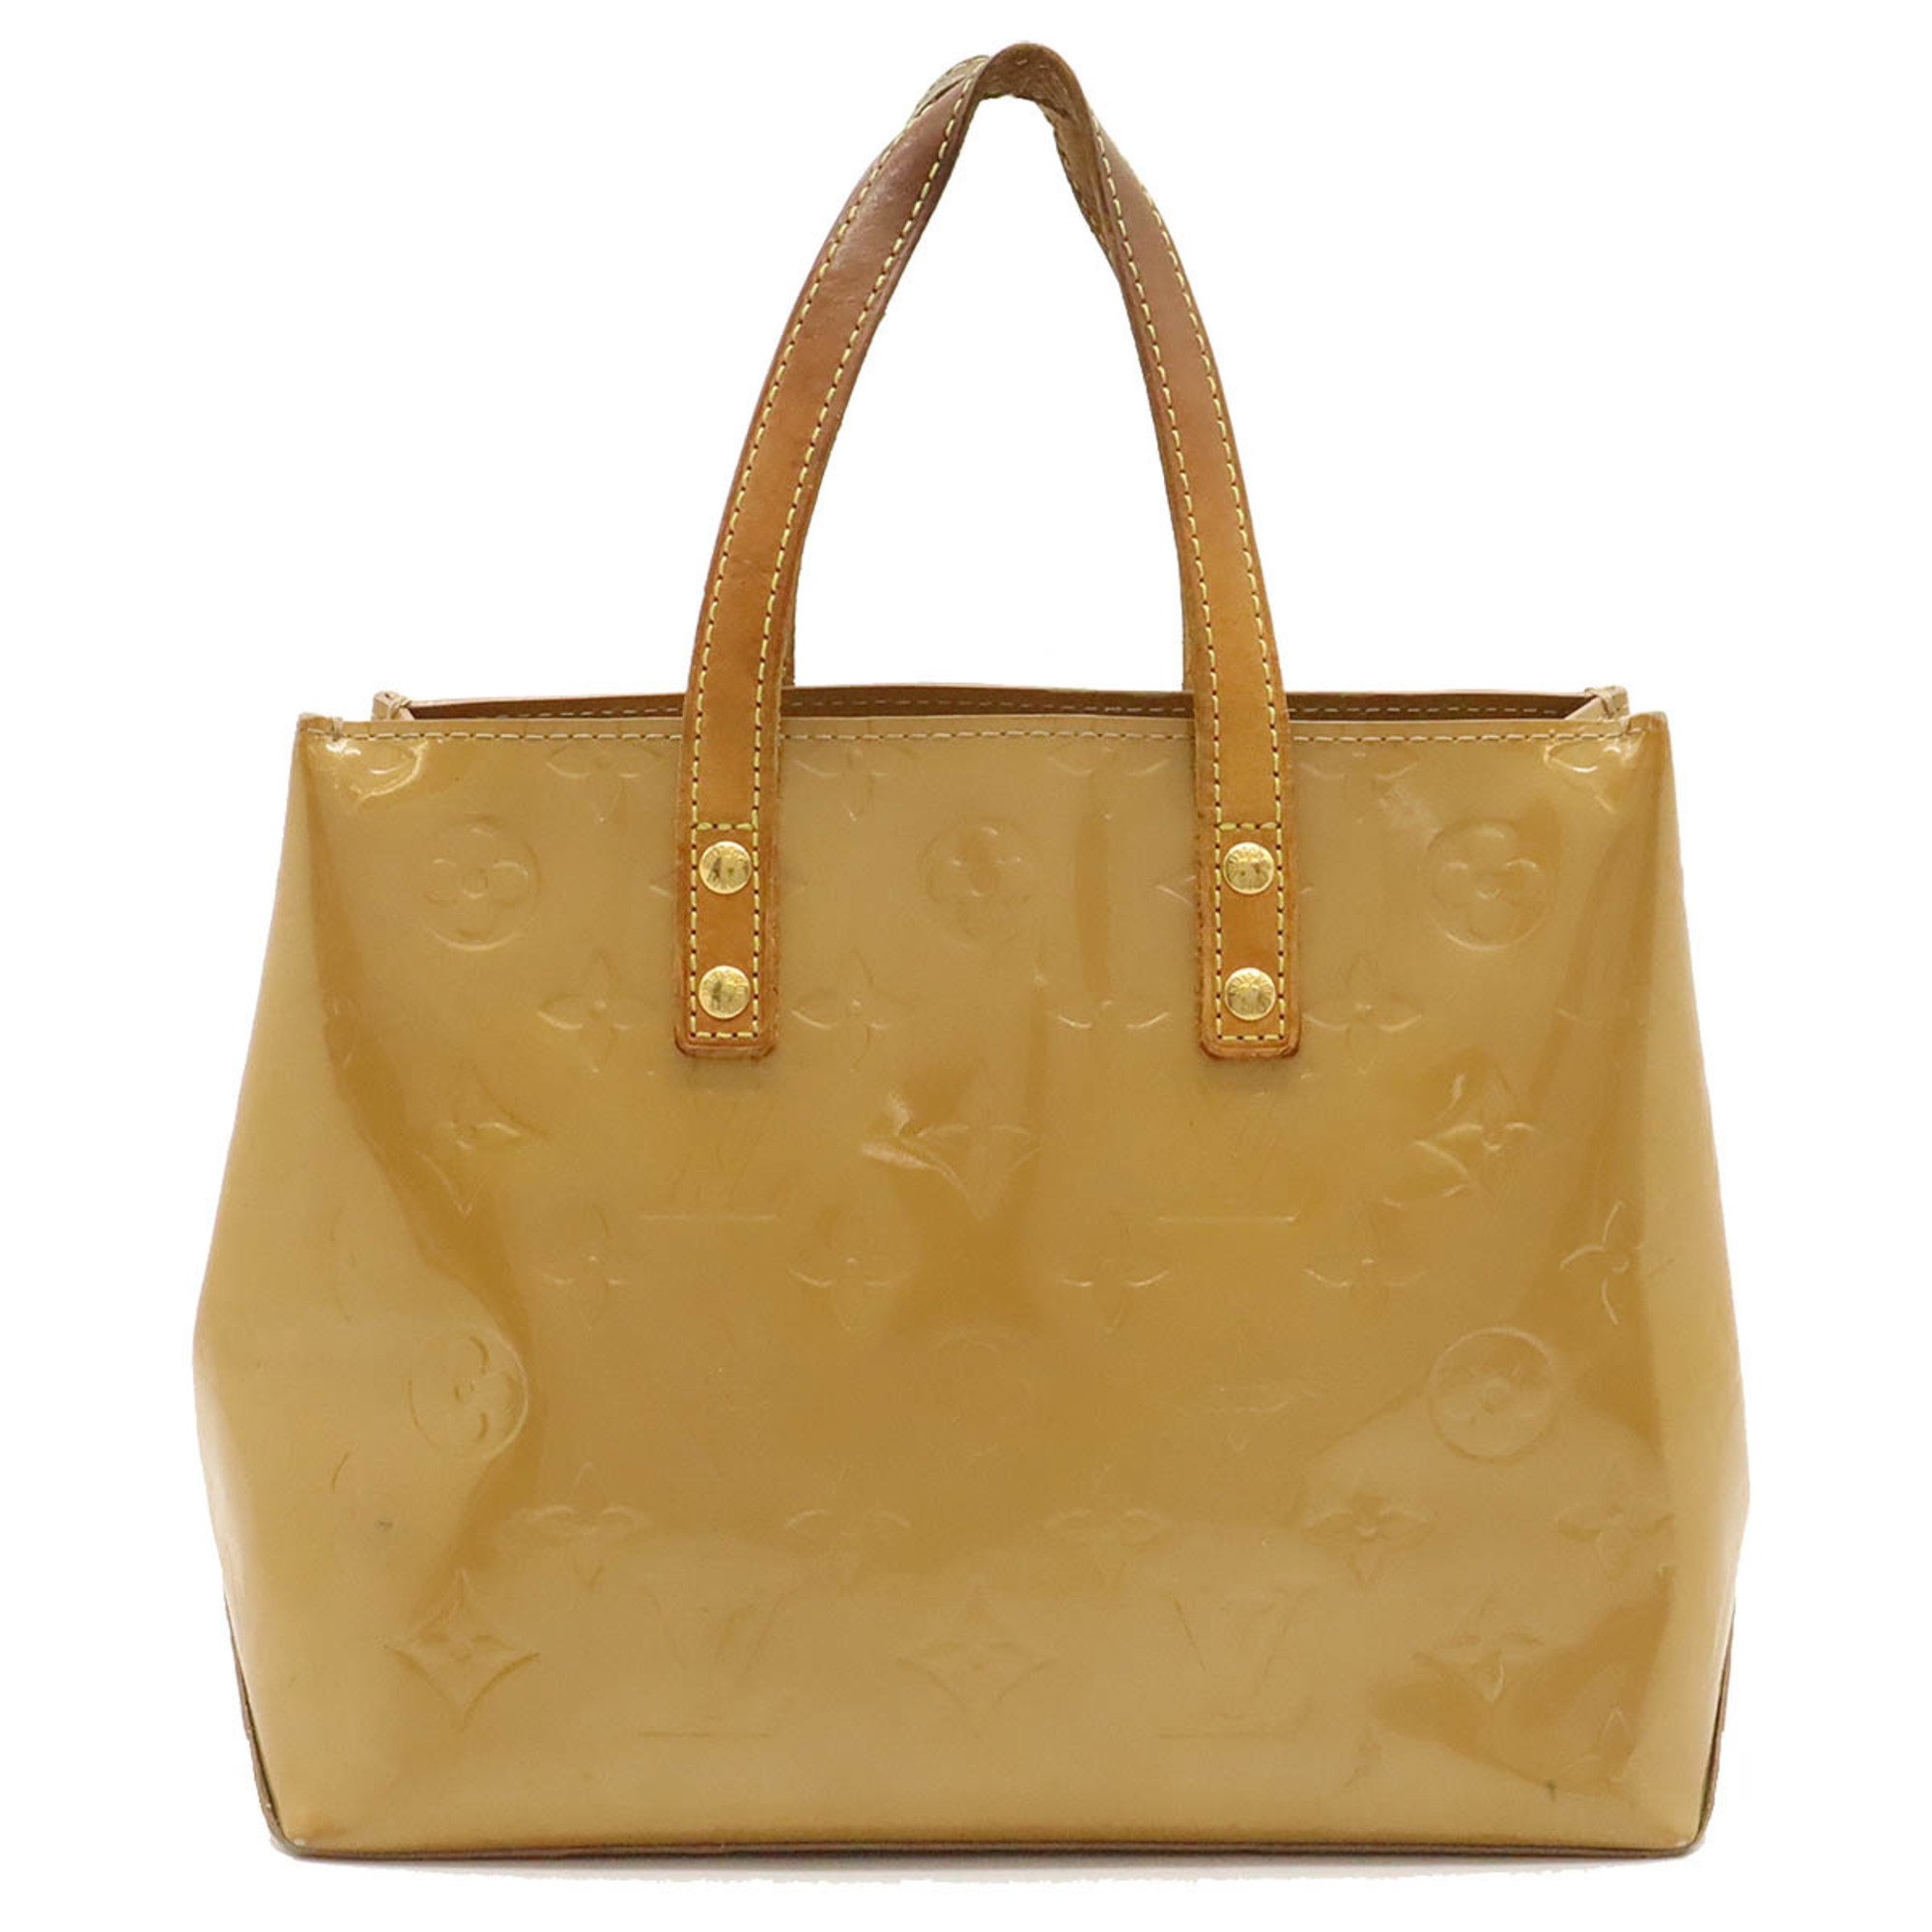 LOUIS VUITTON Louis Vuitton Monogram Vernis Reed PM Handbag Tote Bag Leather Noisette Beige M91334